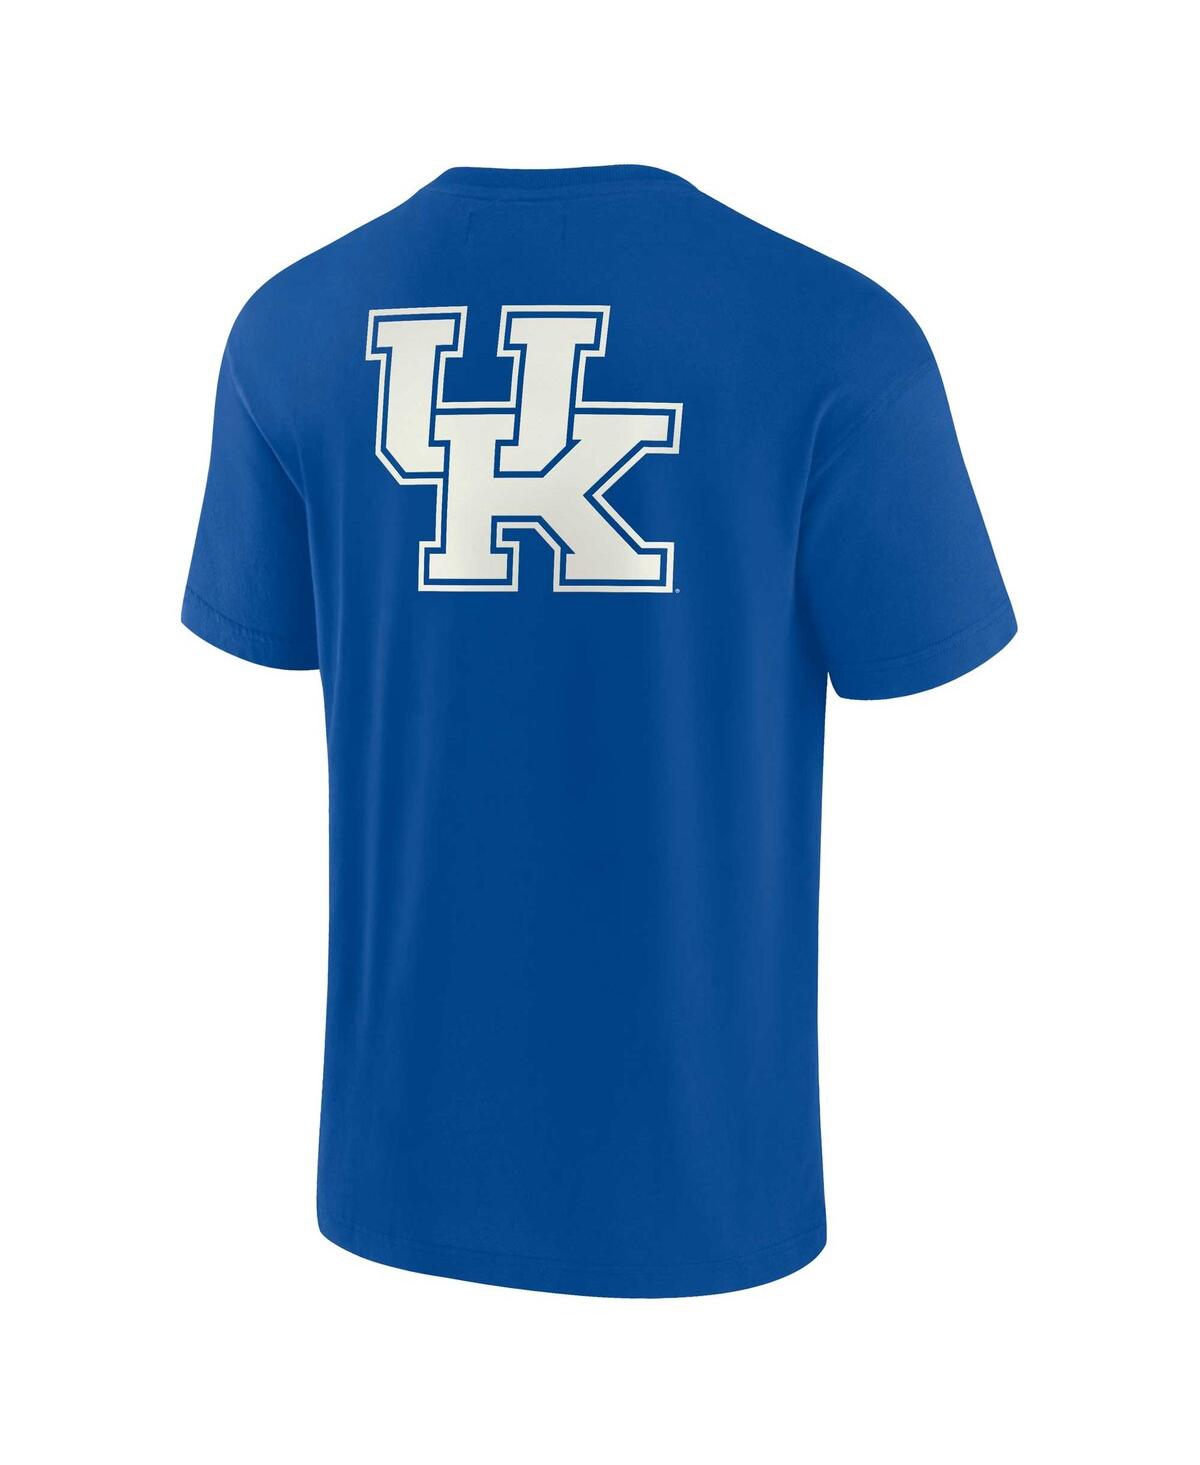 Shop Fanatics Signature Men's And Women's  Royal Kentucky Wildcats Super Soft Short Sleeve T-shirt